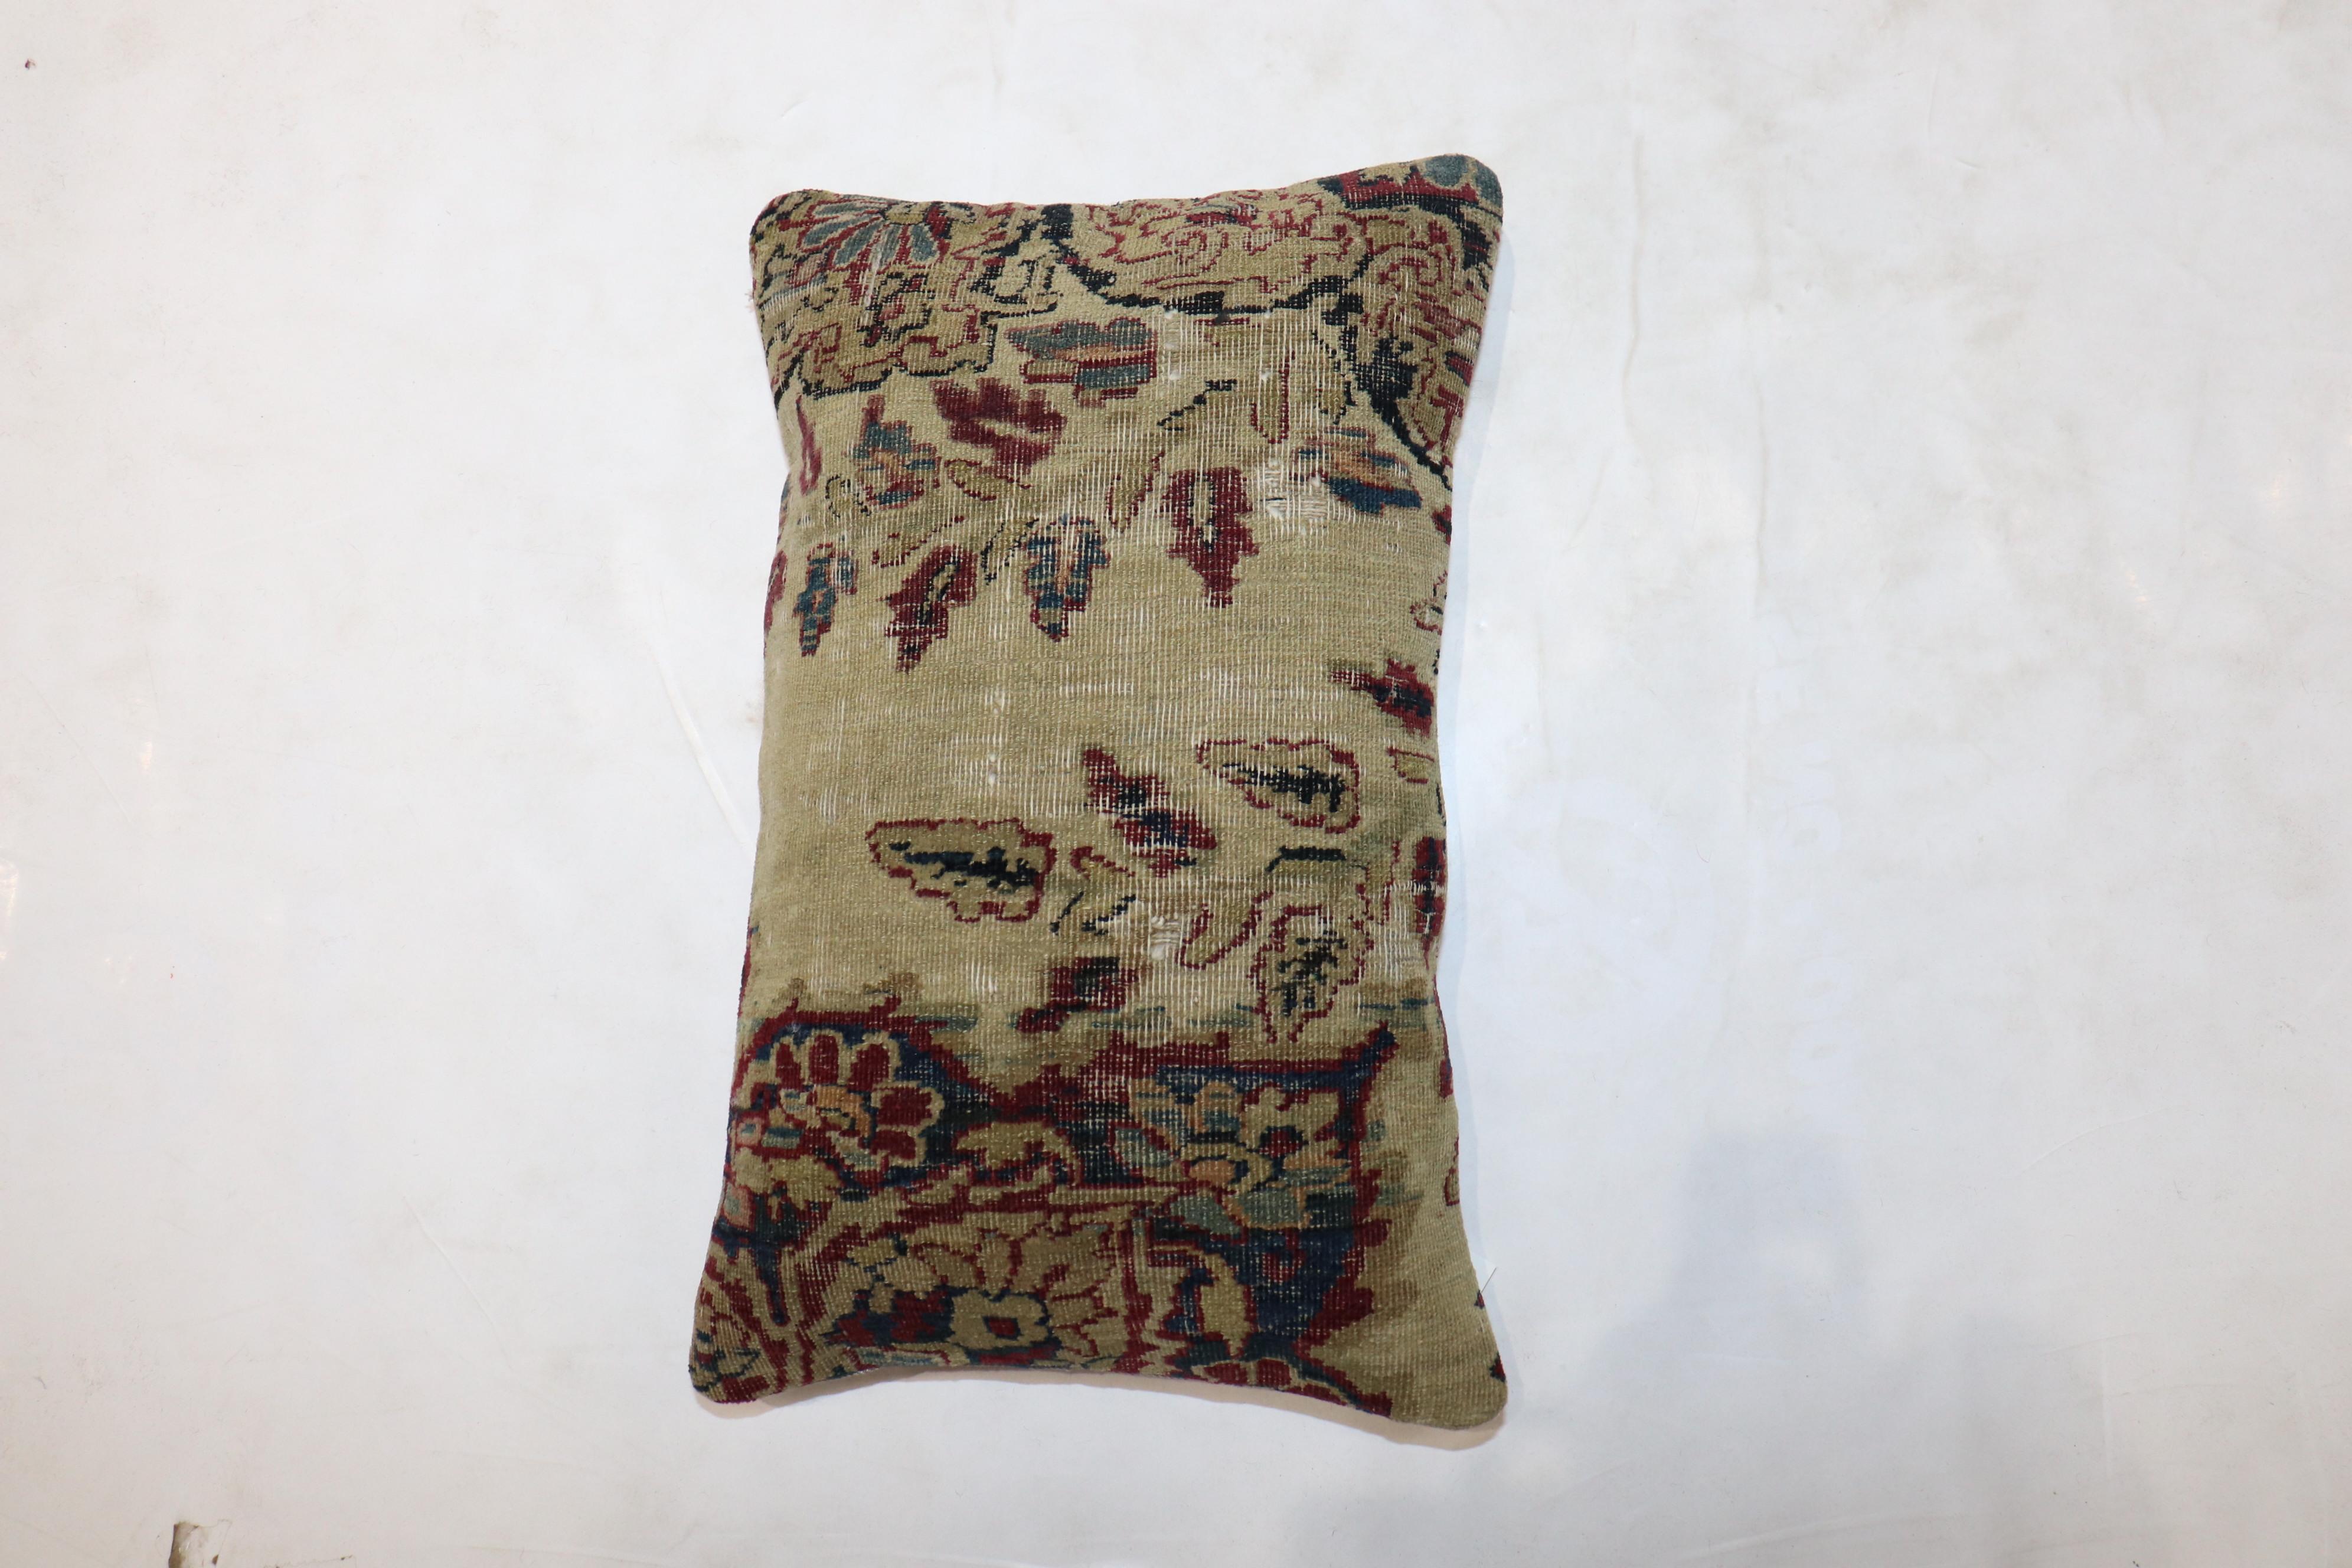 Kissen aus einem persischen Kerman-Teppich aus dem 19. Jahrhundert. Füllungseinsatz und Reißverschluss vorhanden

Maße: 12